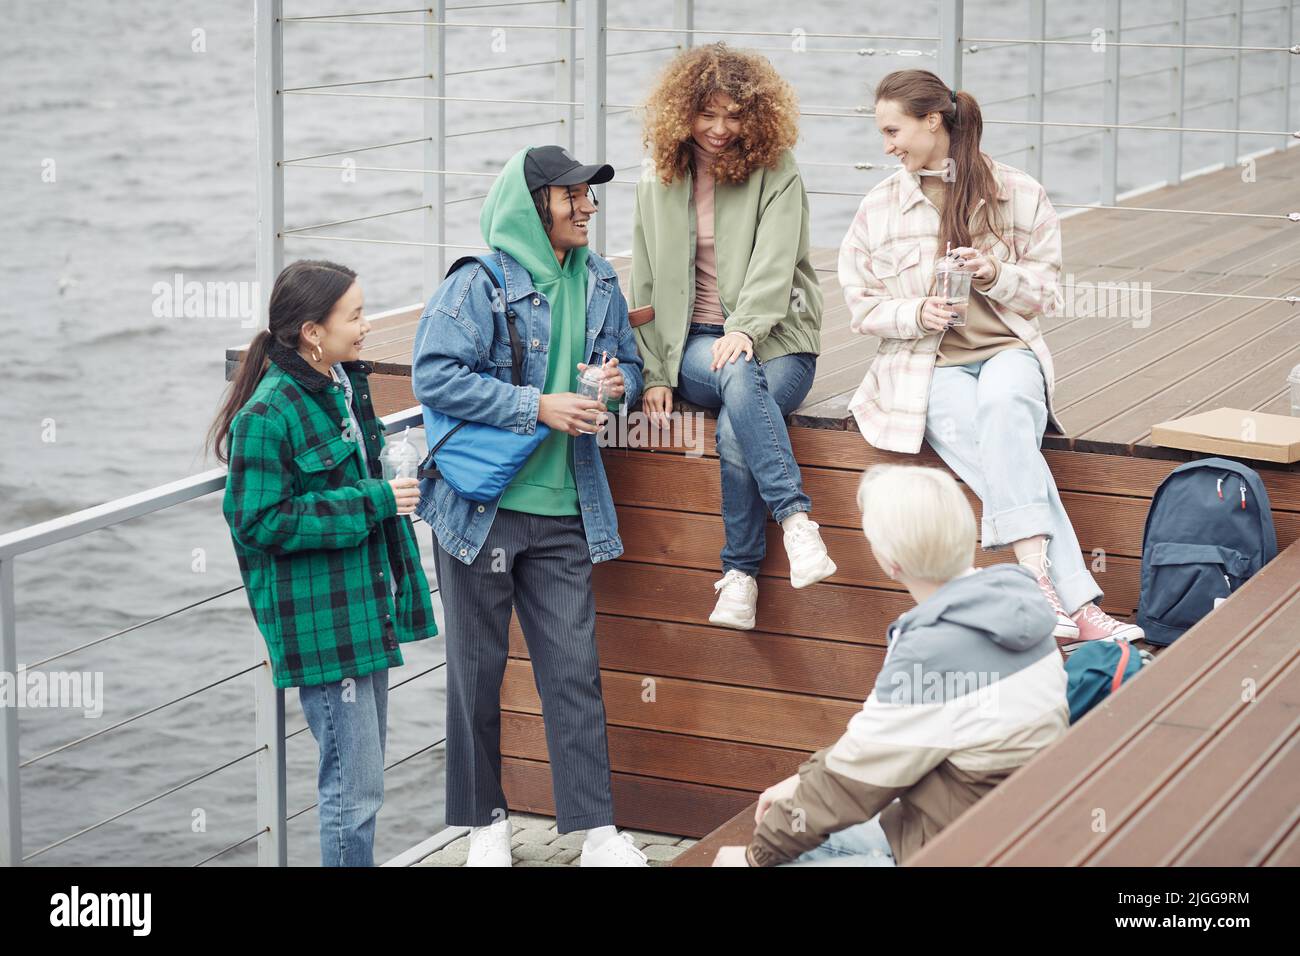 Fünf fröhliche Teenager-Freunde in Casualwear erzählen Witze oder diskutieren lustige Dinge, während sie sich nach dem College auf dem hölzernen Pier am Wasser ausruhen Stockfoto